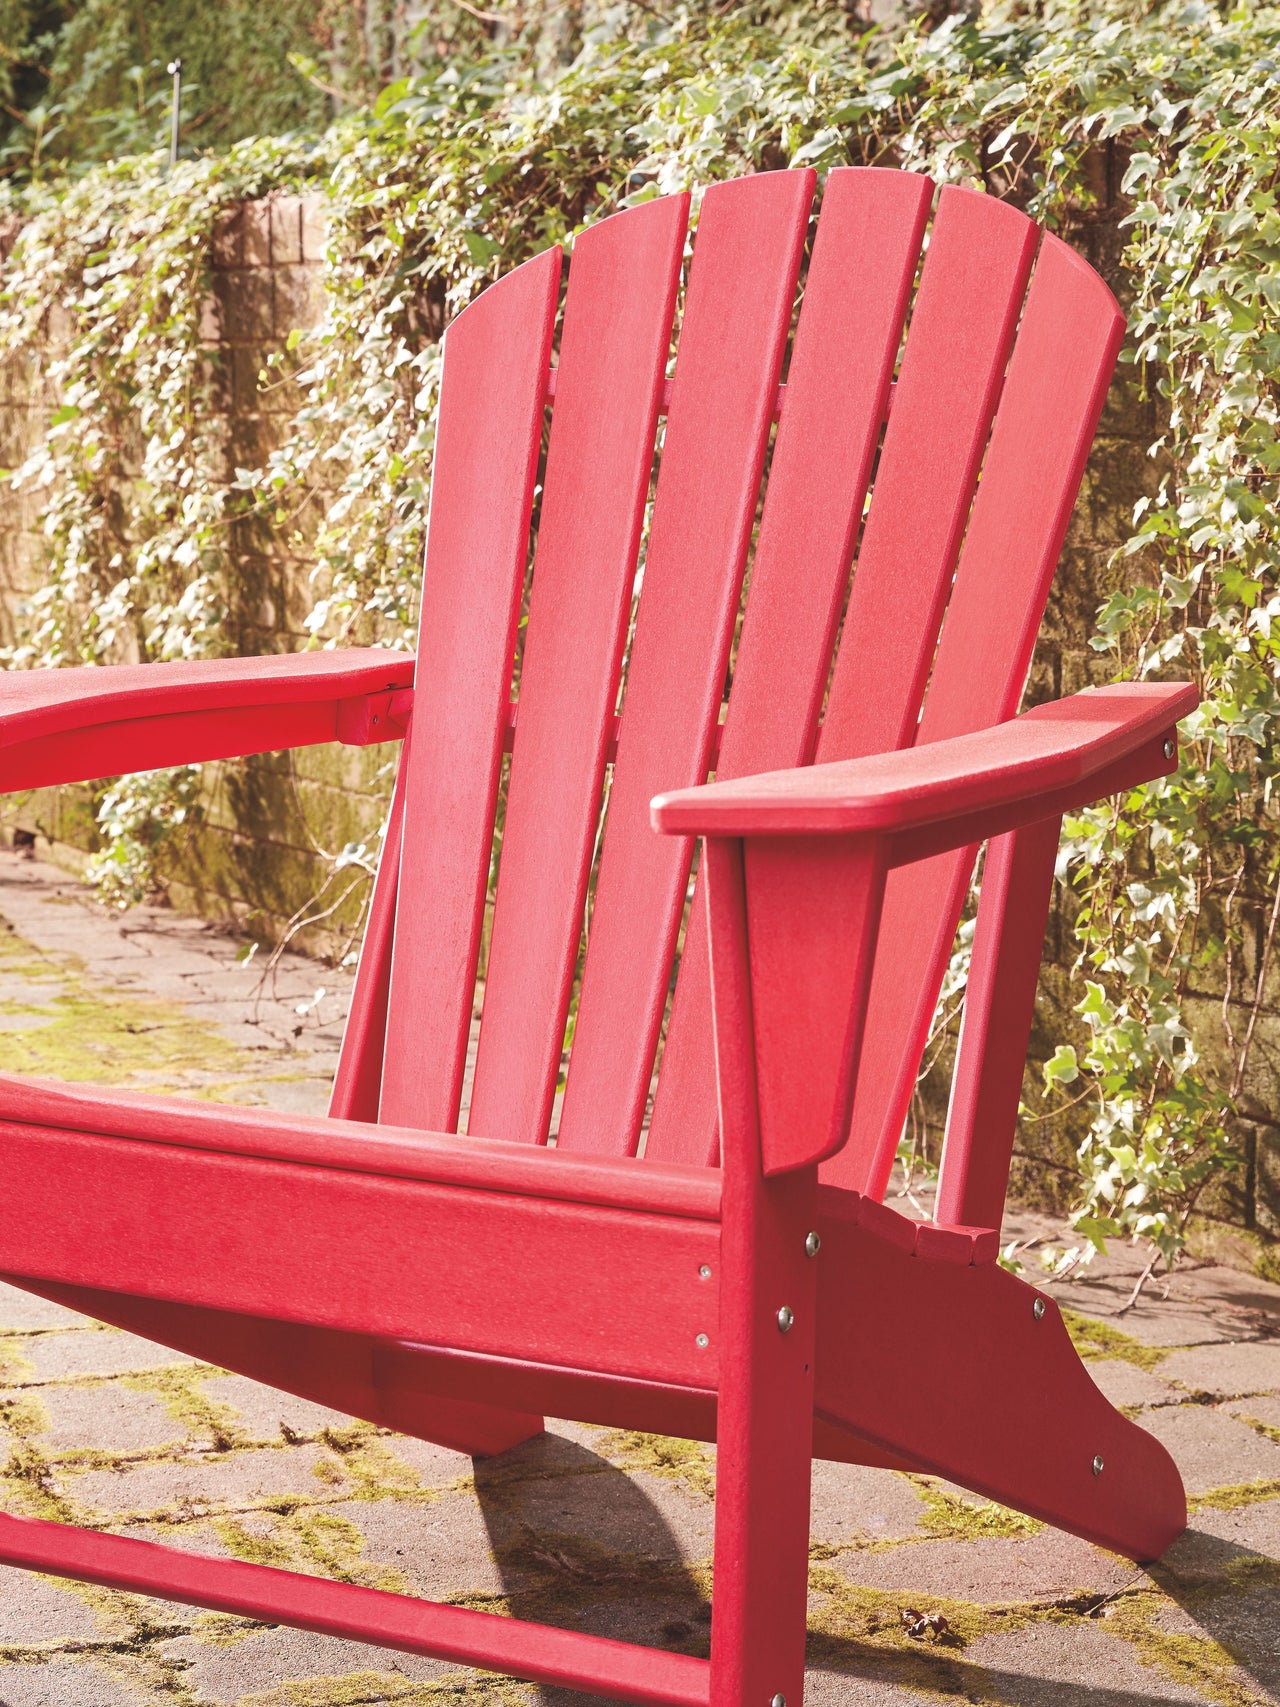 Sundown Treasure - Outdoor Adirondack Chair - Tony's Home Furnishings